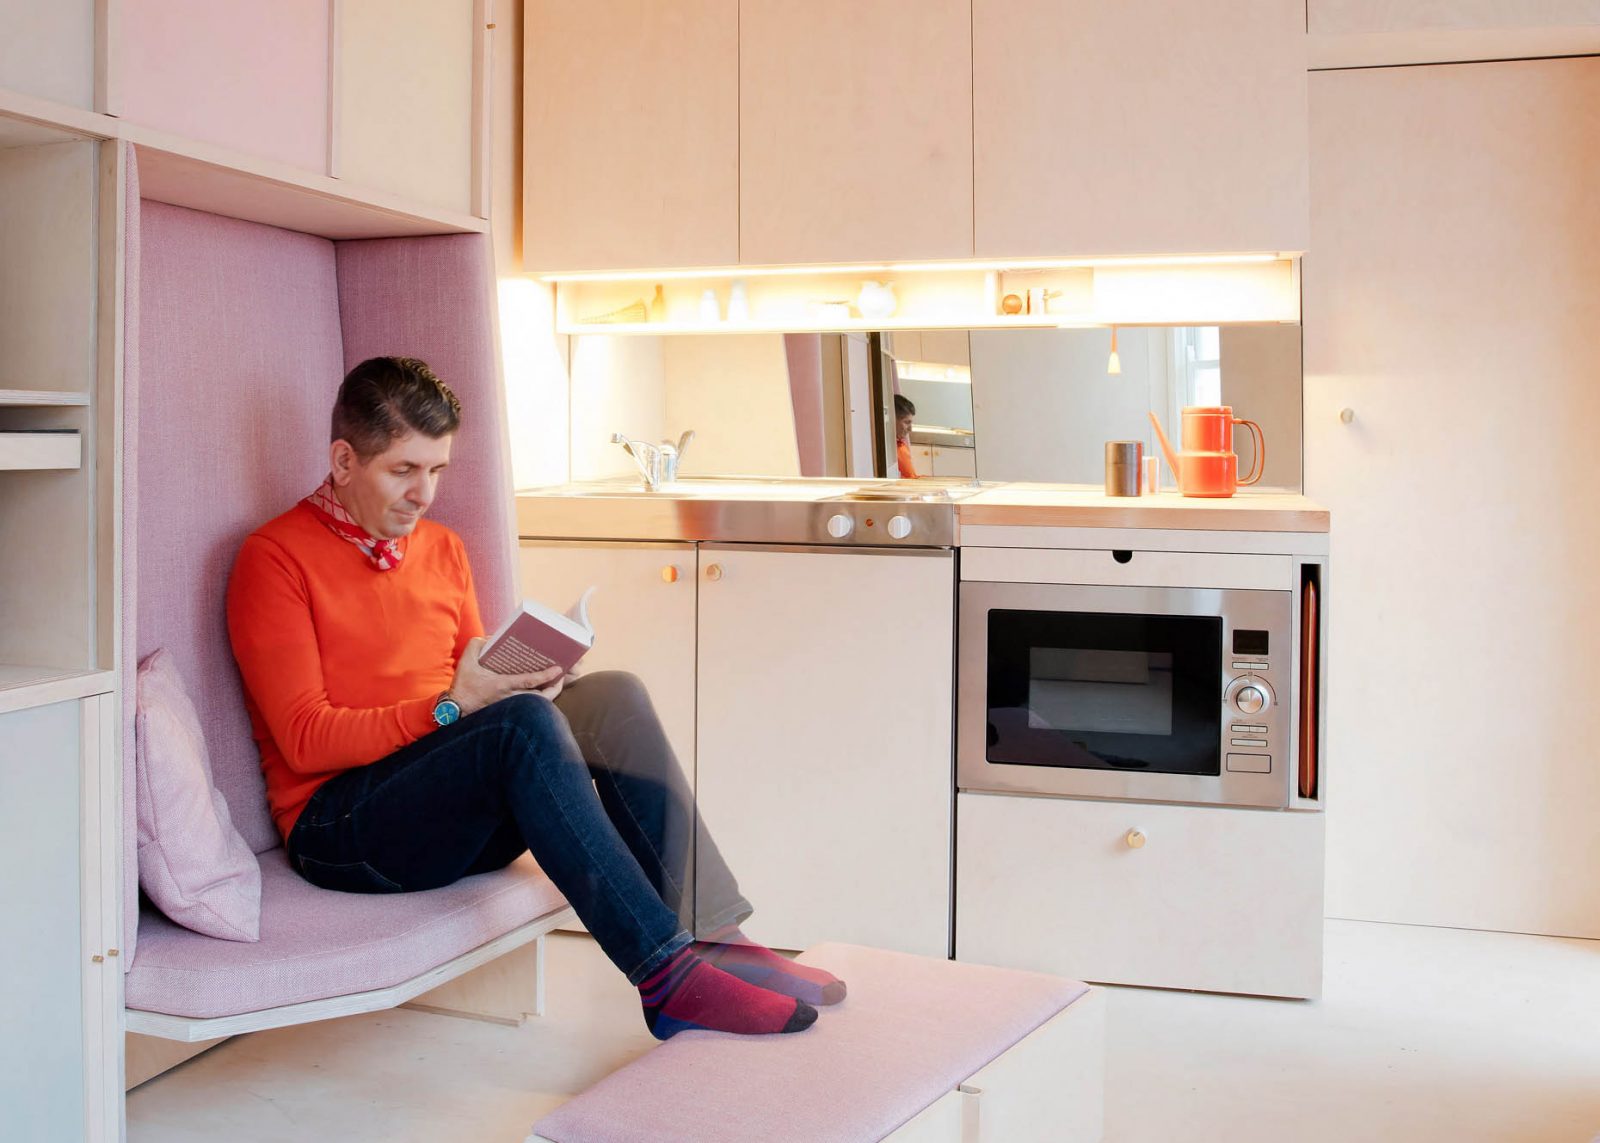 Дизайн кухни 13 кв. м — примеры интерьера на фото